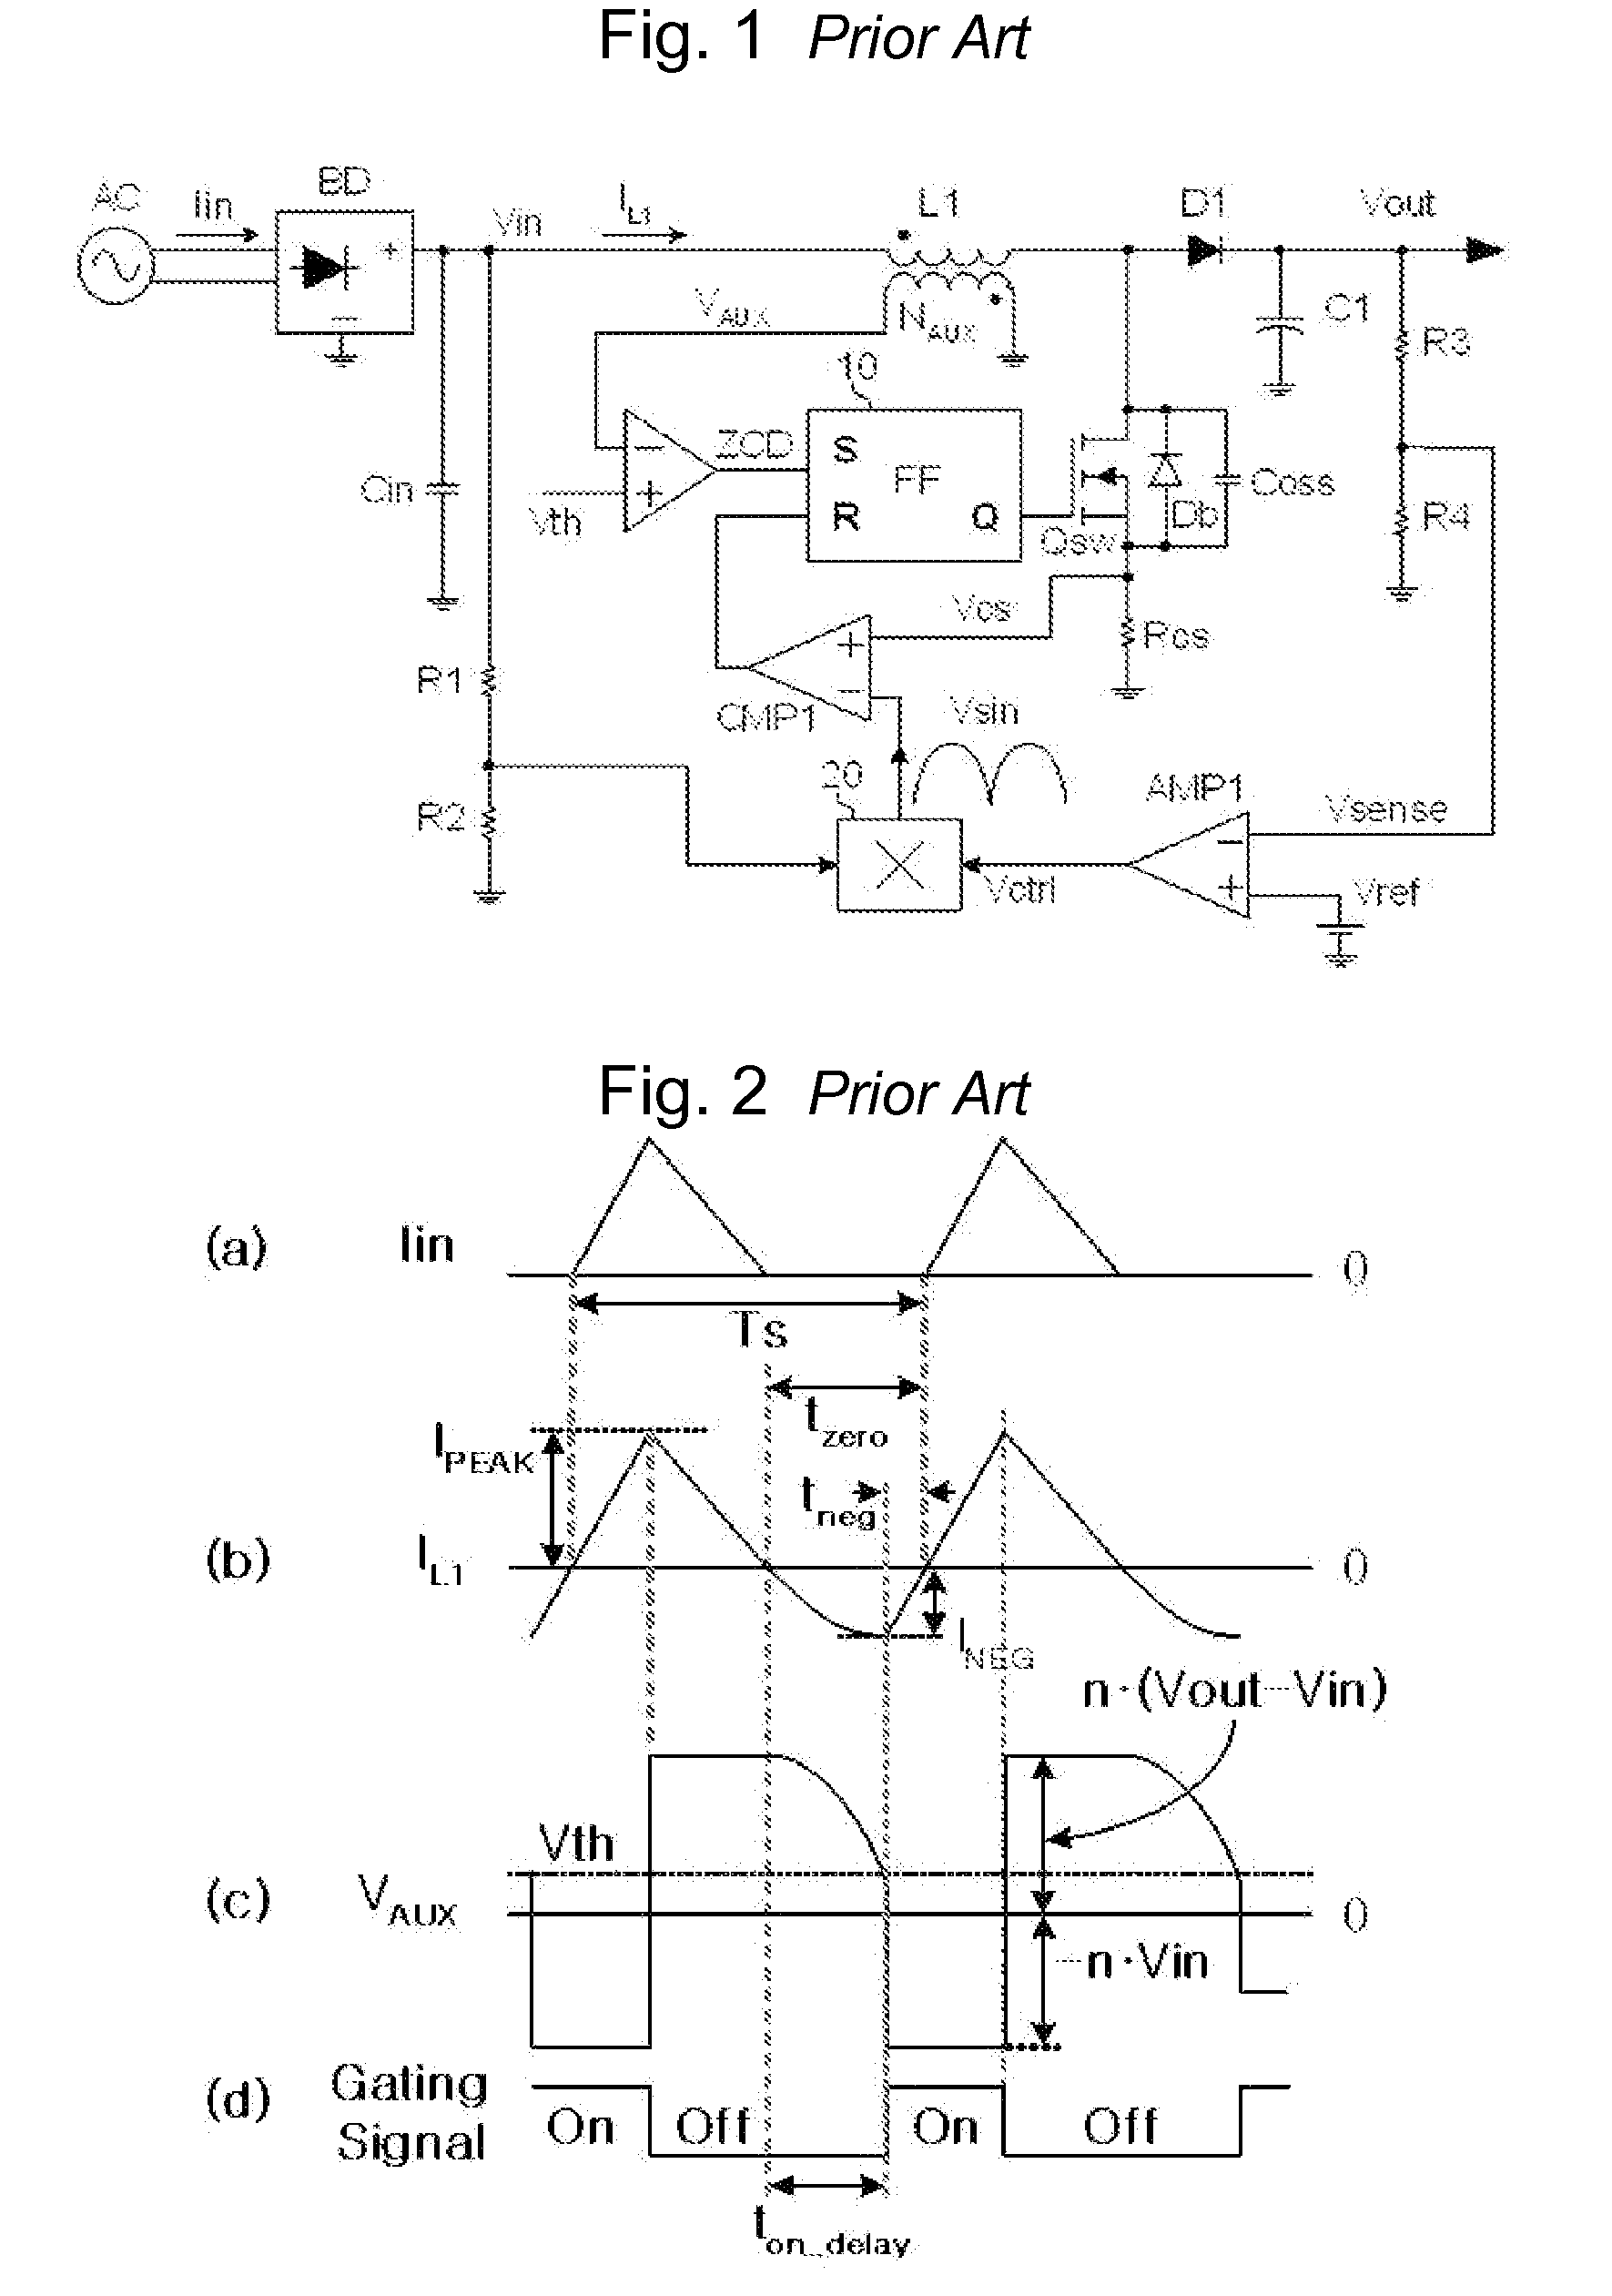 Power factor correction circuit